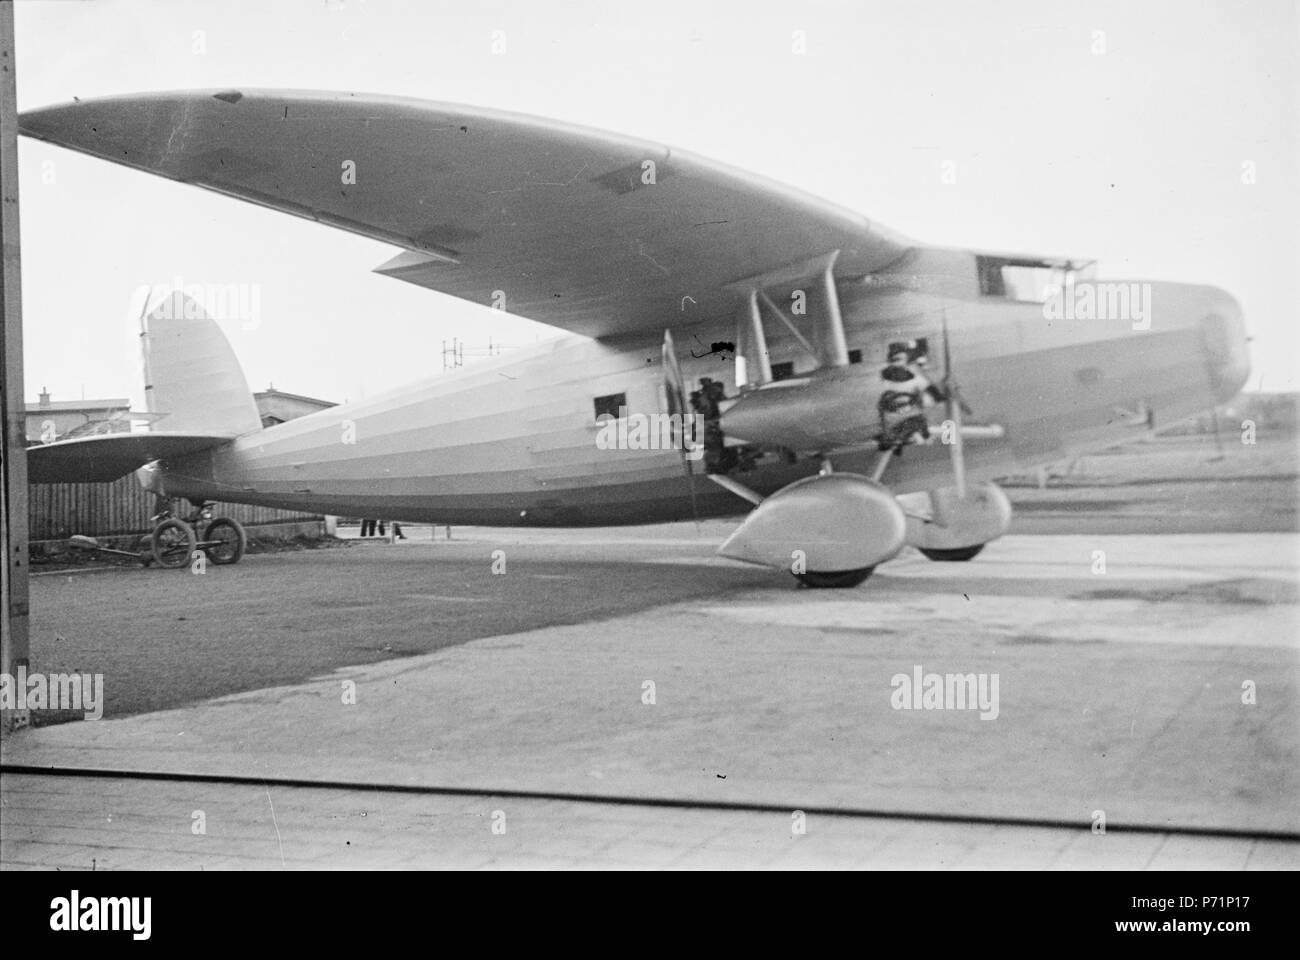 Erstflug: 17.8.31. 1932 Vergleich mit der Ju-52 anl�lich eines Alpenflugs in der Schweiz, 'outclassed  durch die Ju-52, Projekt nicht weiter verfolgt 34 Dornier Do K ETH-BIB-Flugzeug am Boden-Inlandflüge-LBS MH05-72-08 Stock Photo